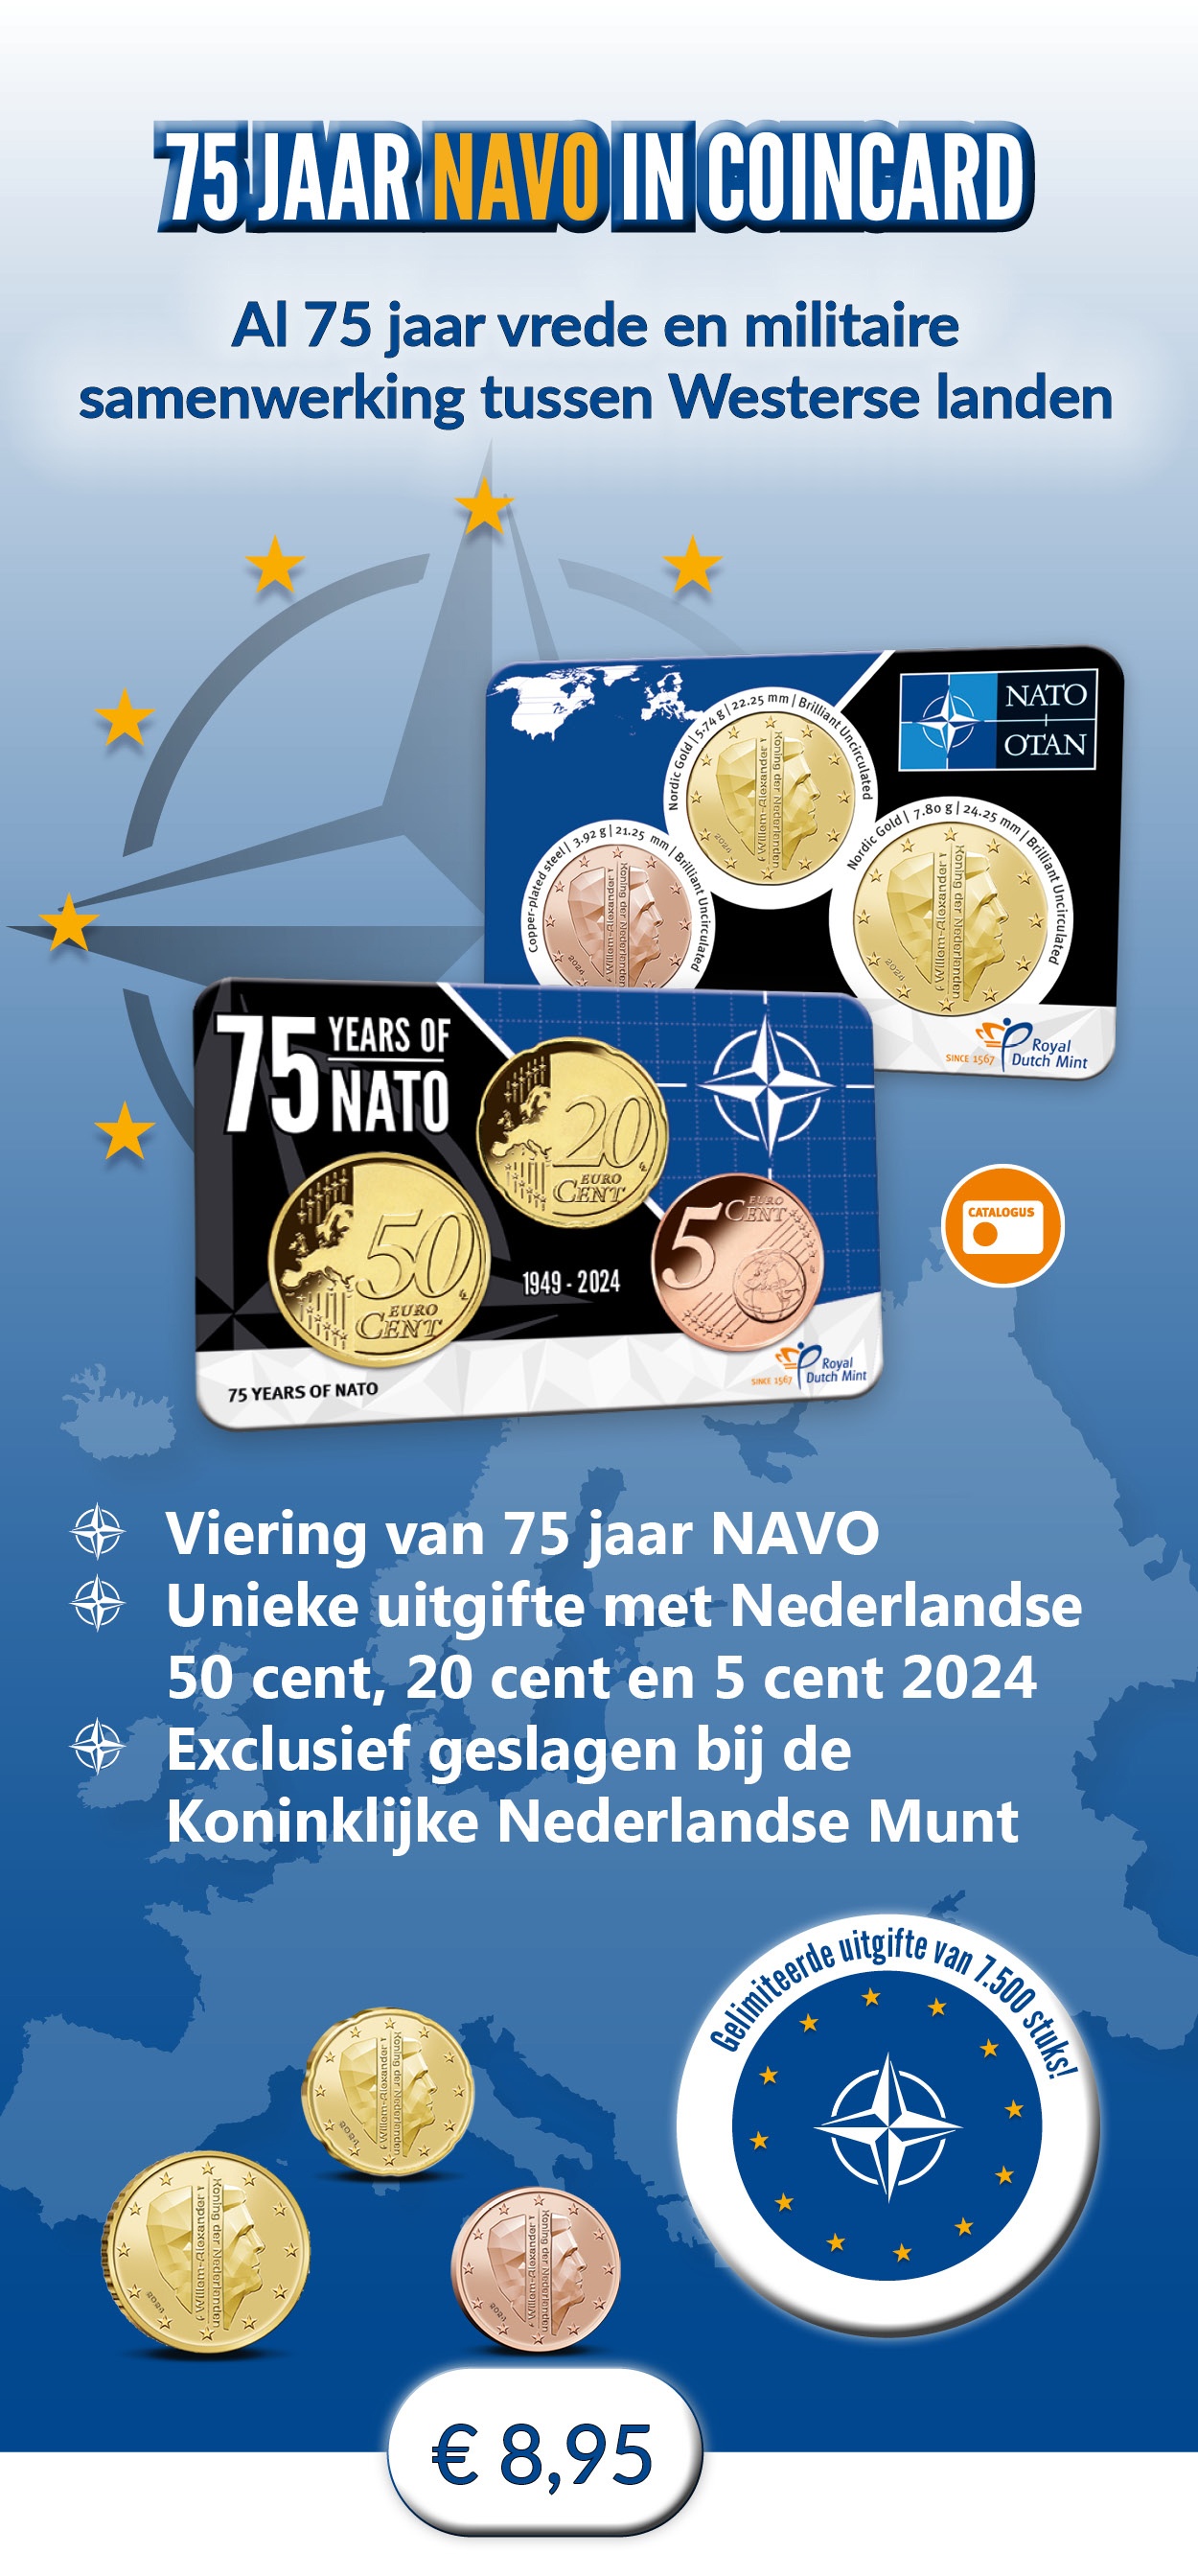 75 jaar NAVO in coincard